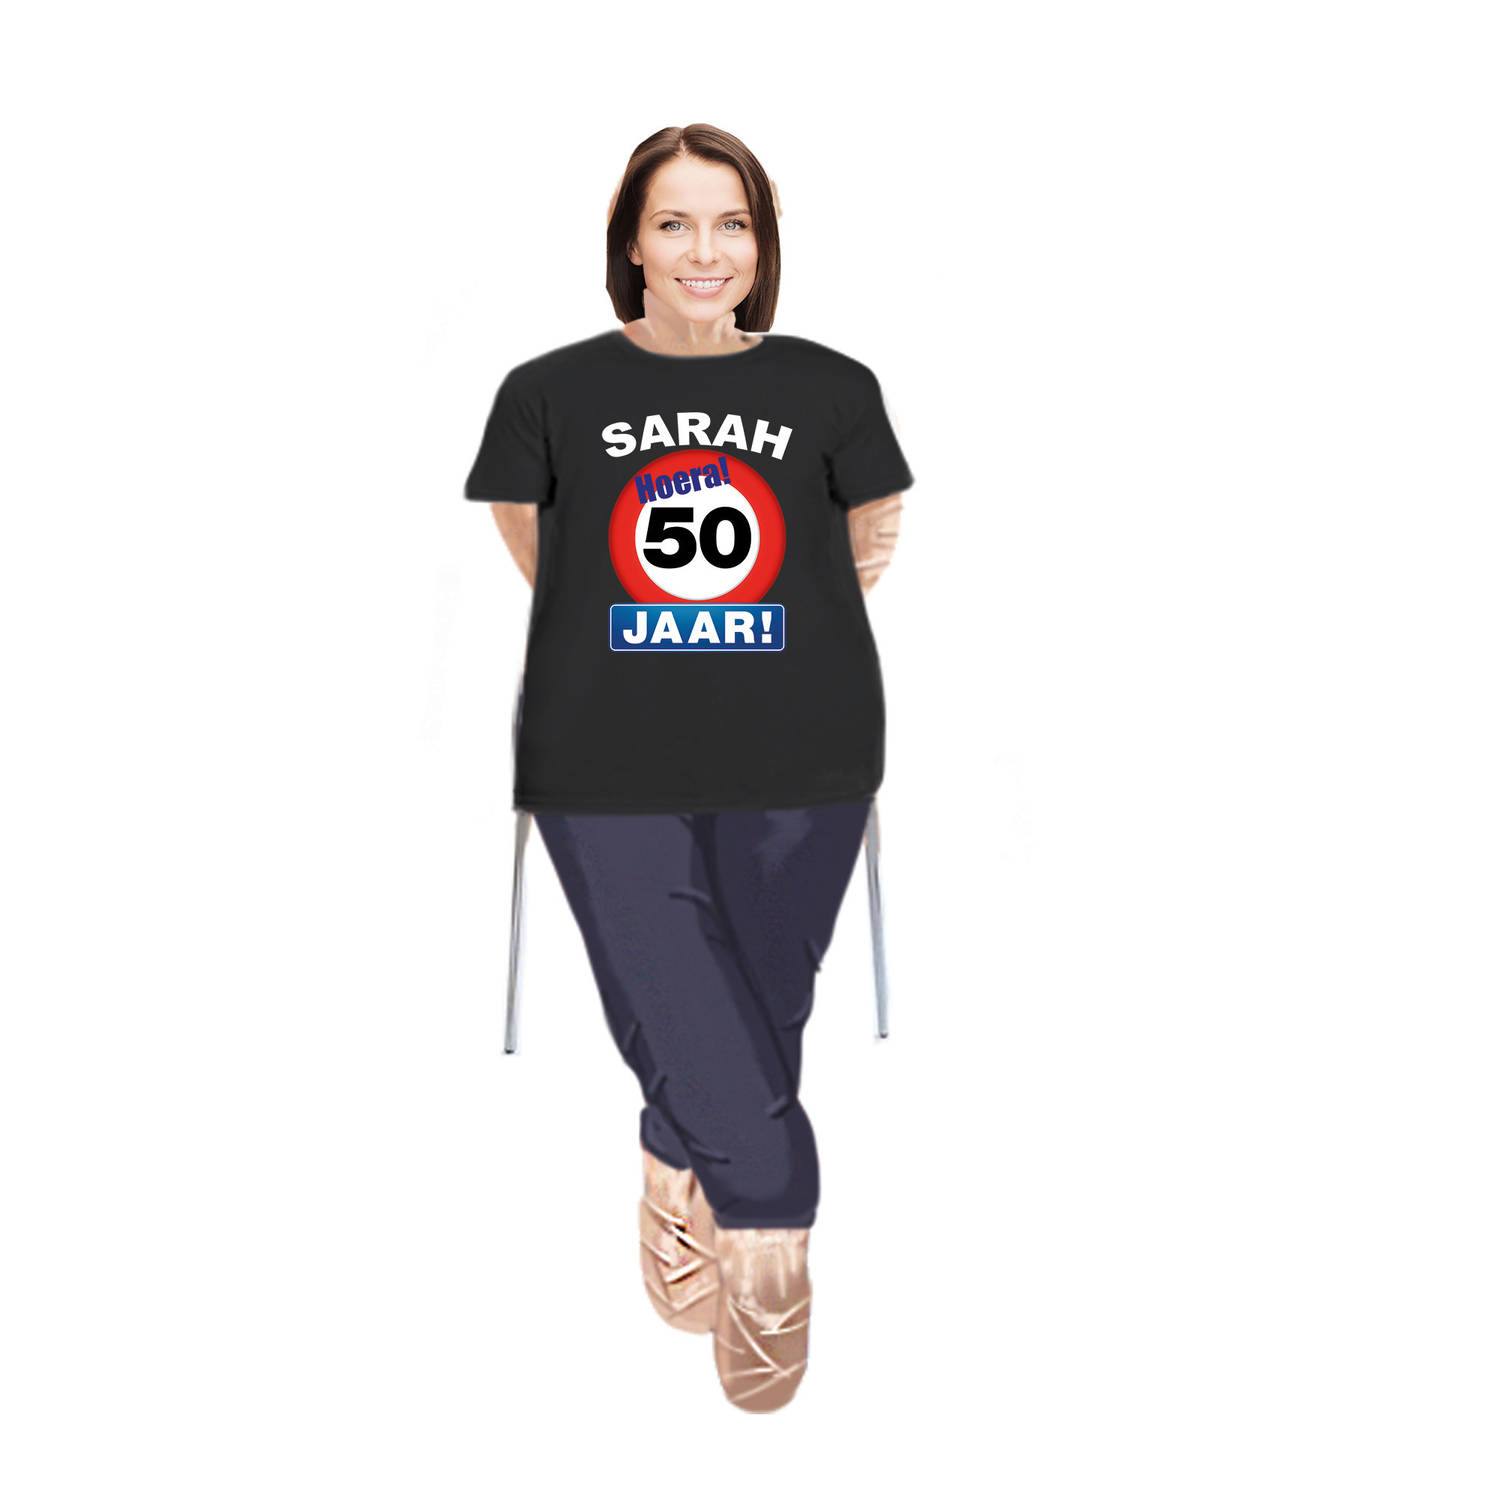 Sarah pop compleet met stopbord 50 jaar t-shirt - Feestdecoratievoorwerp